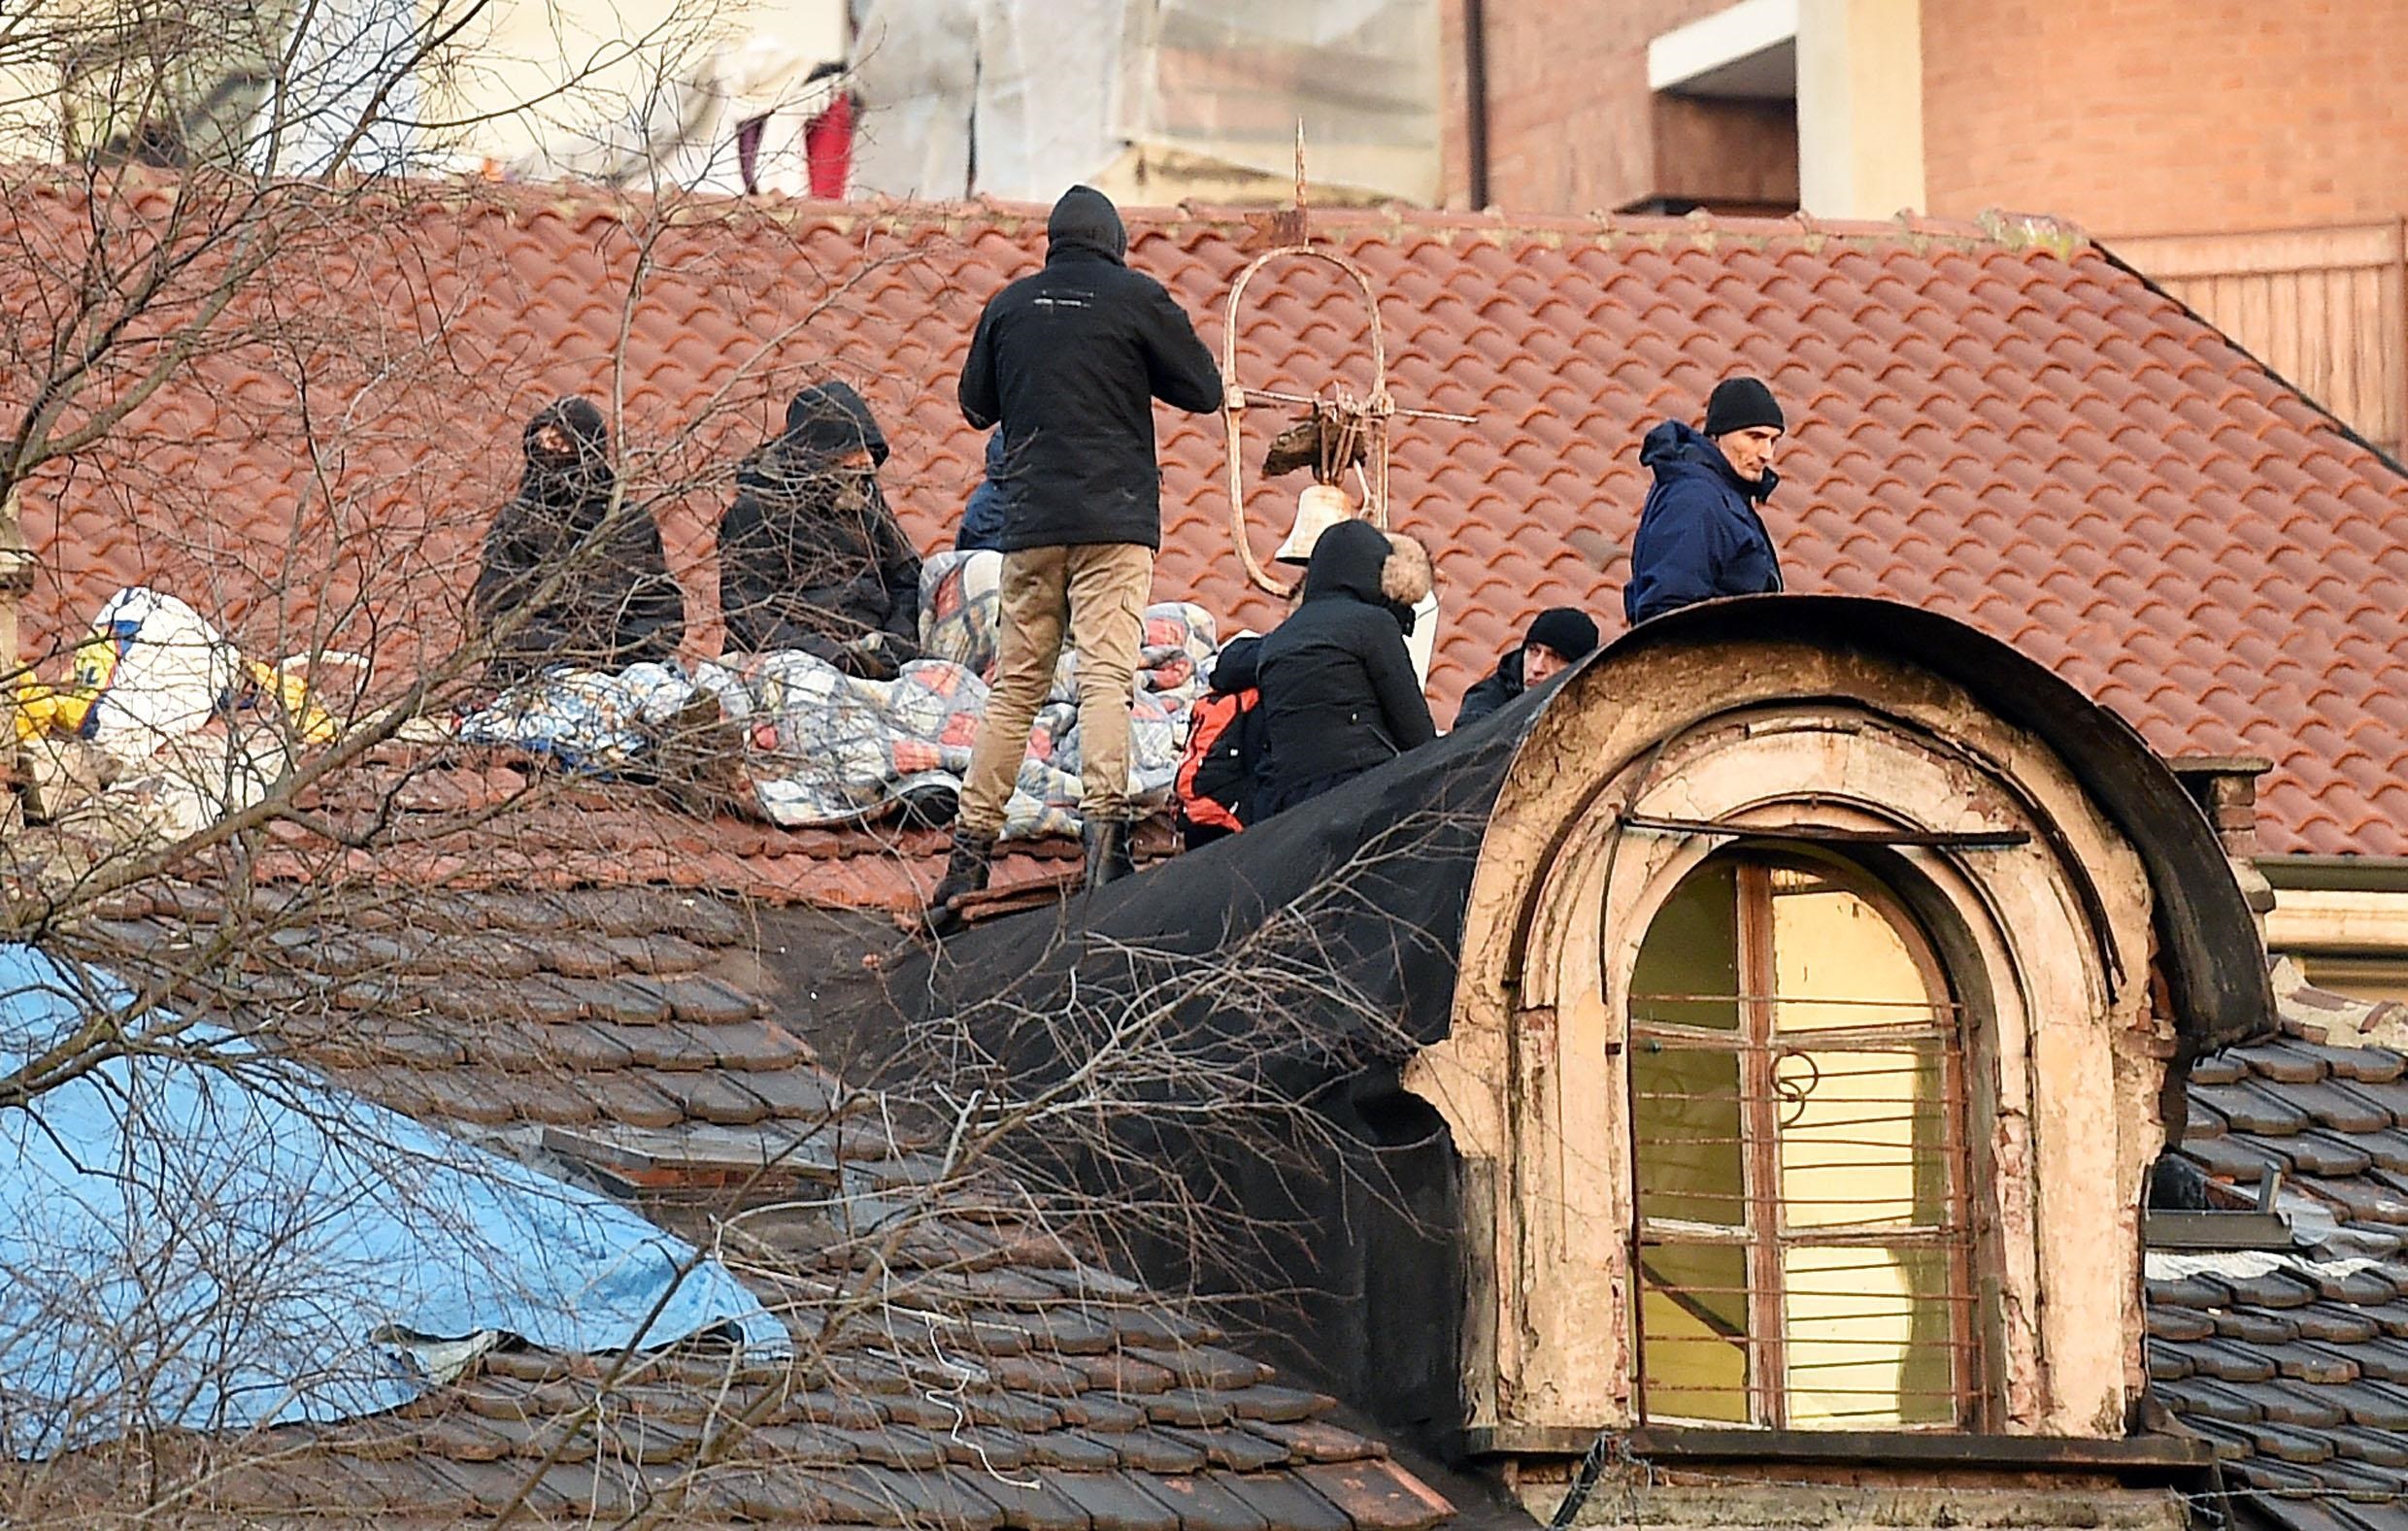 Le persone del centro sociale accampate sul tetto in segno di protesta